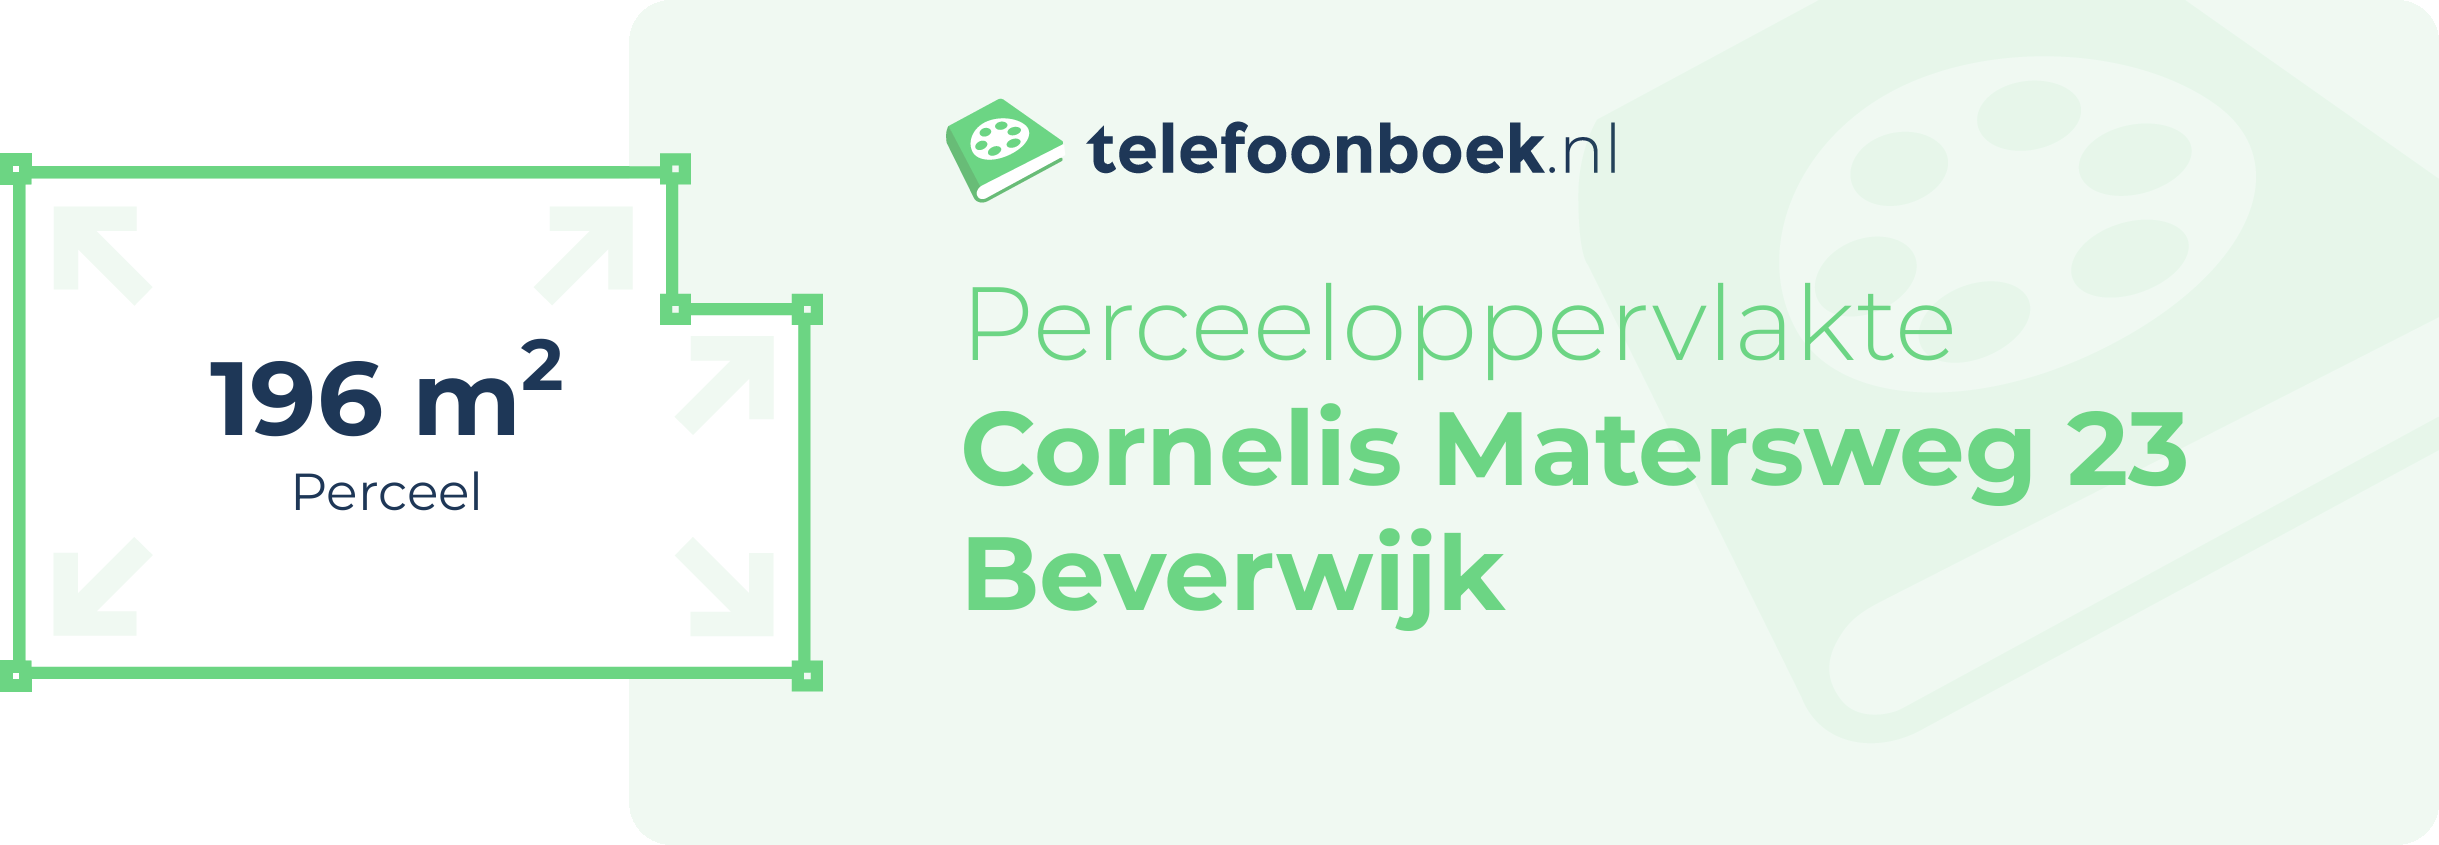 Perceeloppervlakte Cornelis Matersweg 23 Beverwijk